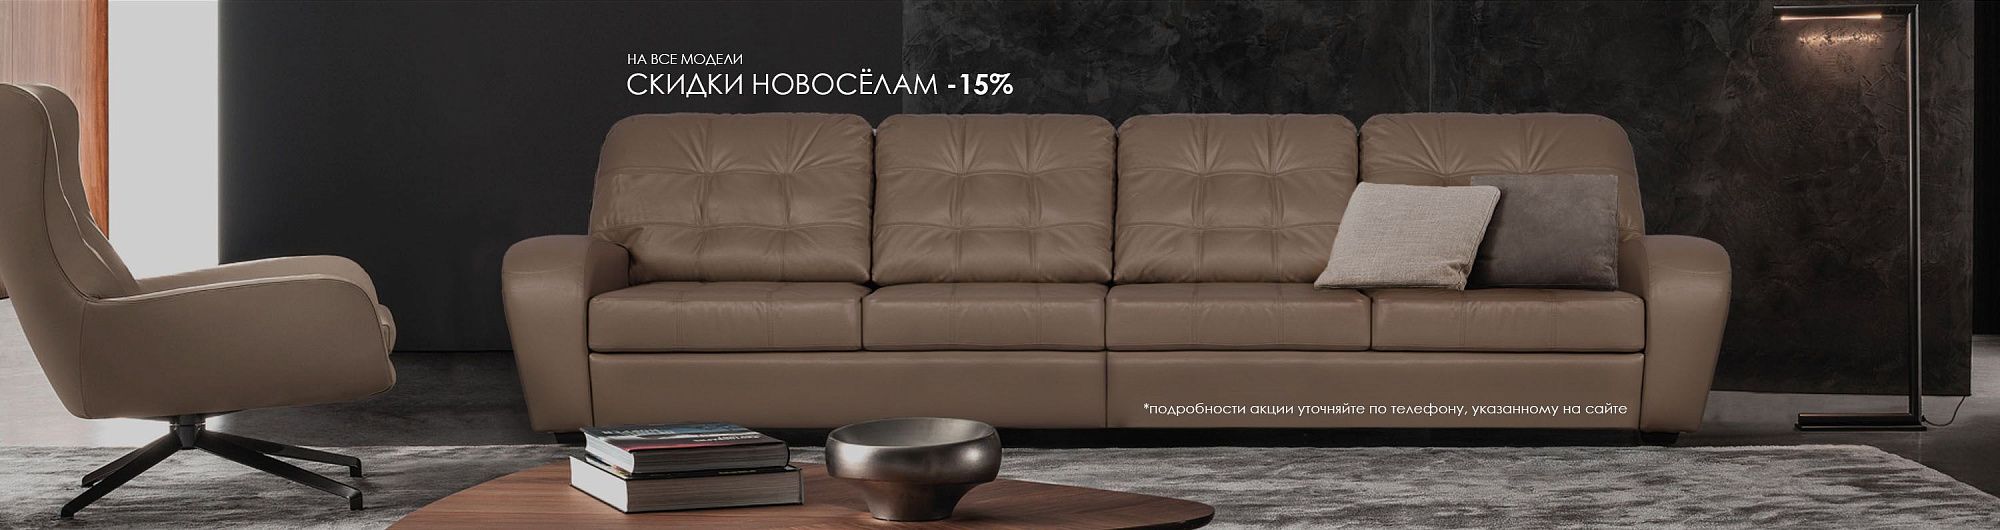 Интернет-магазин мягкой мебели в Москве Home Collection: купить диваны и  другую мебель по цене от производителя